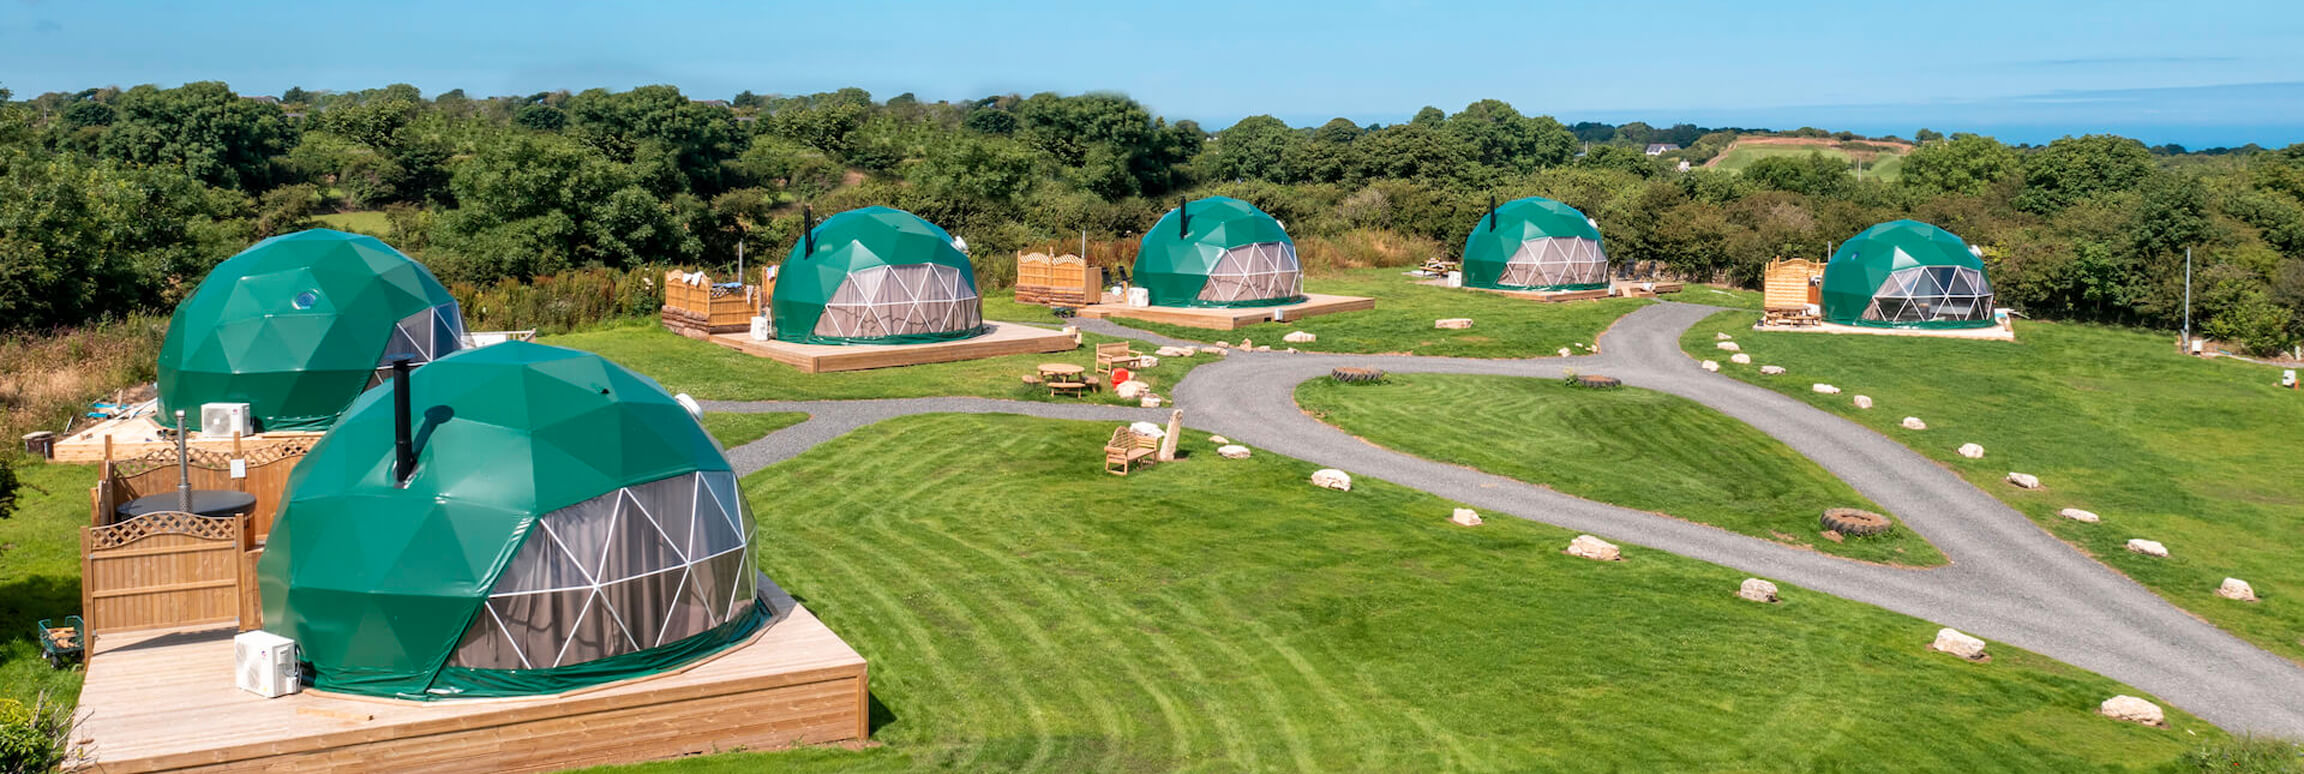 zelený geodetický kupolový stan